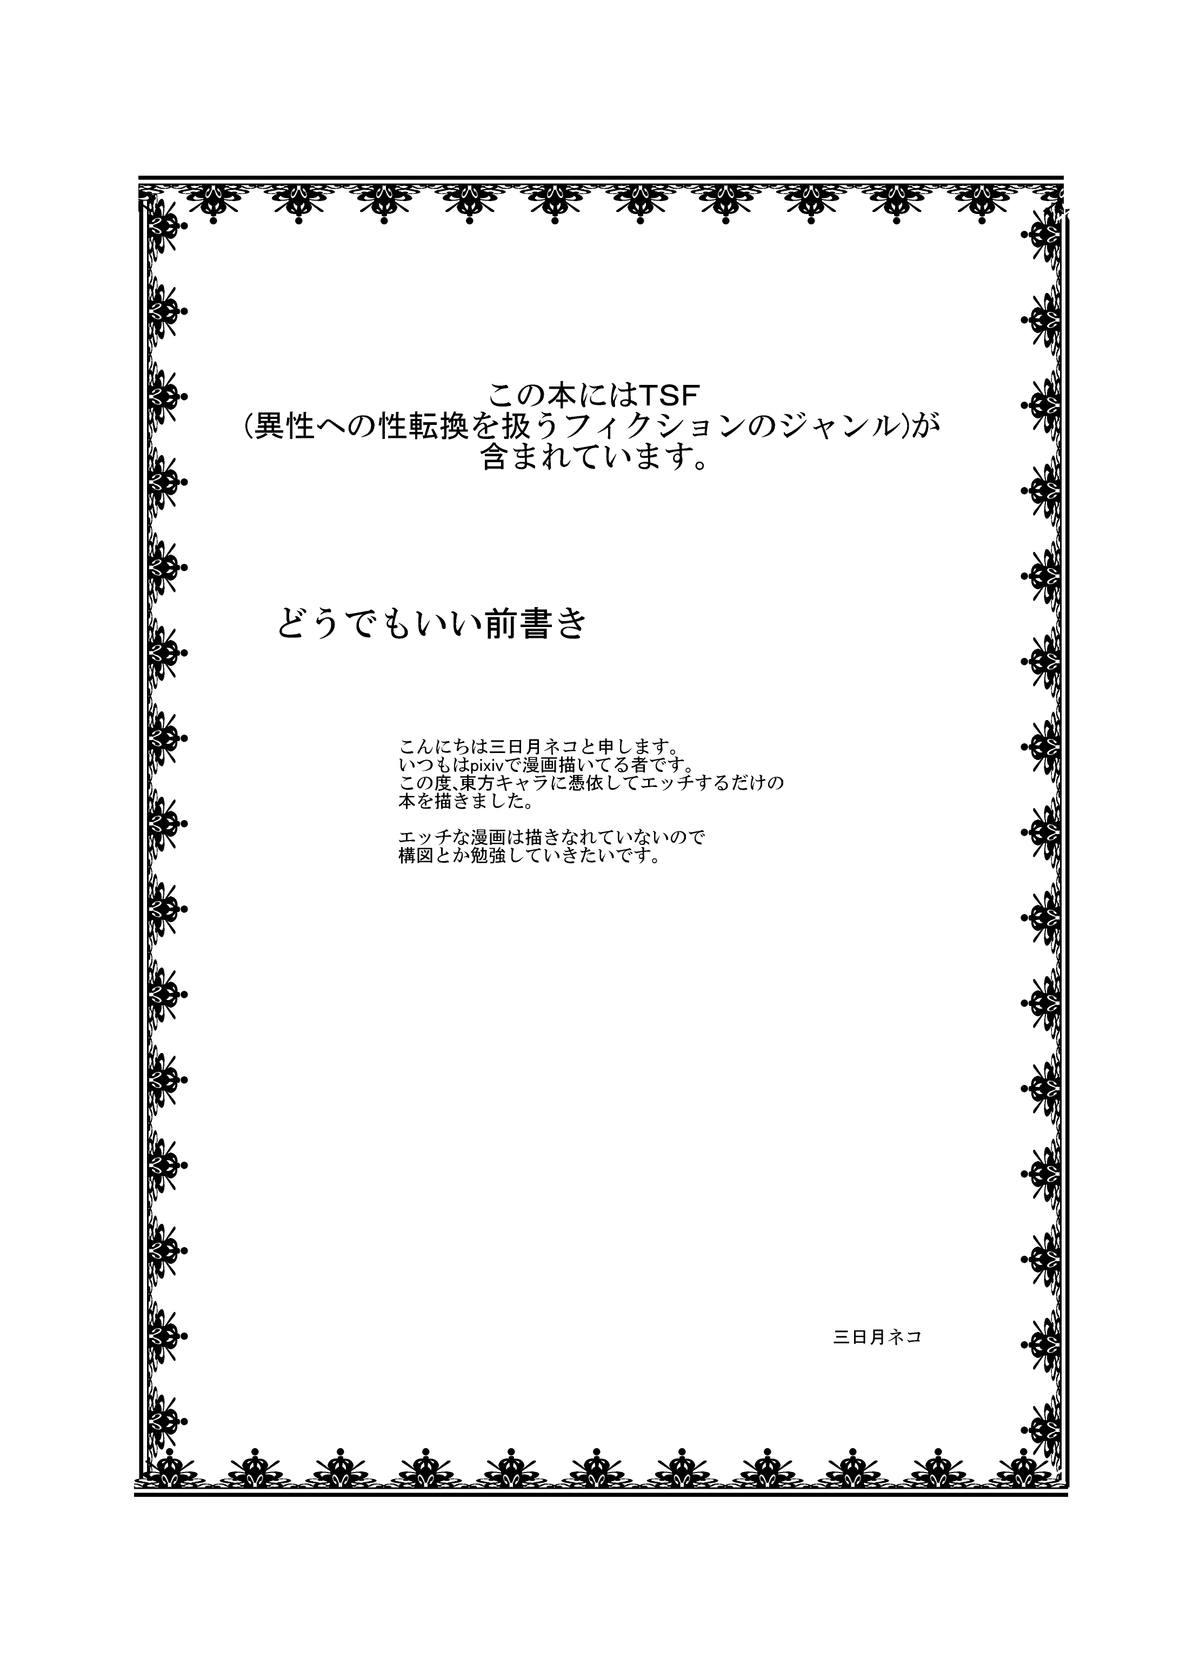 Mallu Touhou TS monogatari - Touhou project Stepdad - Page 2